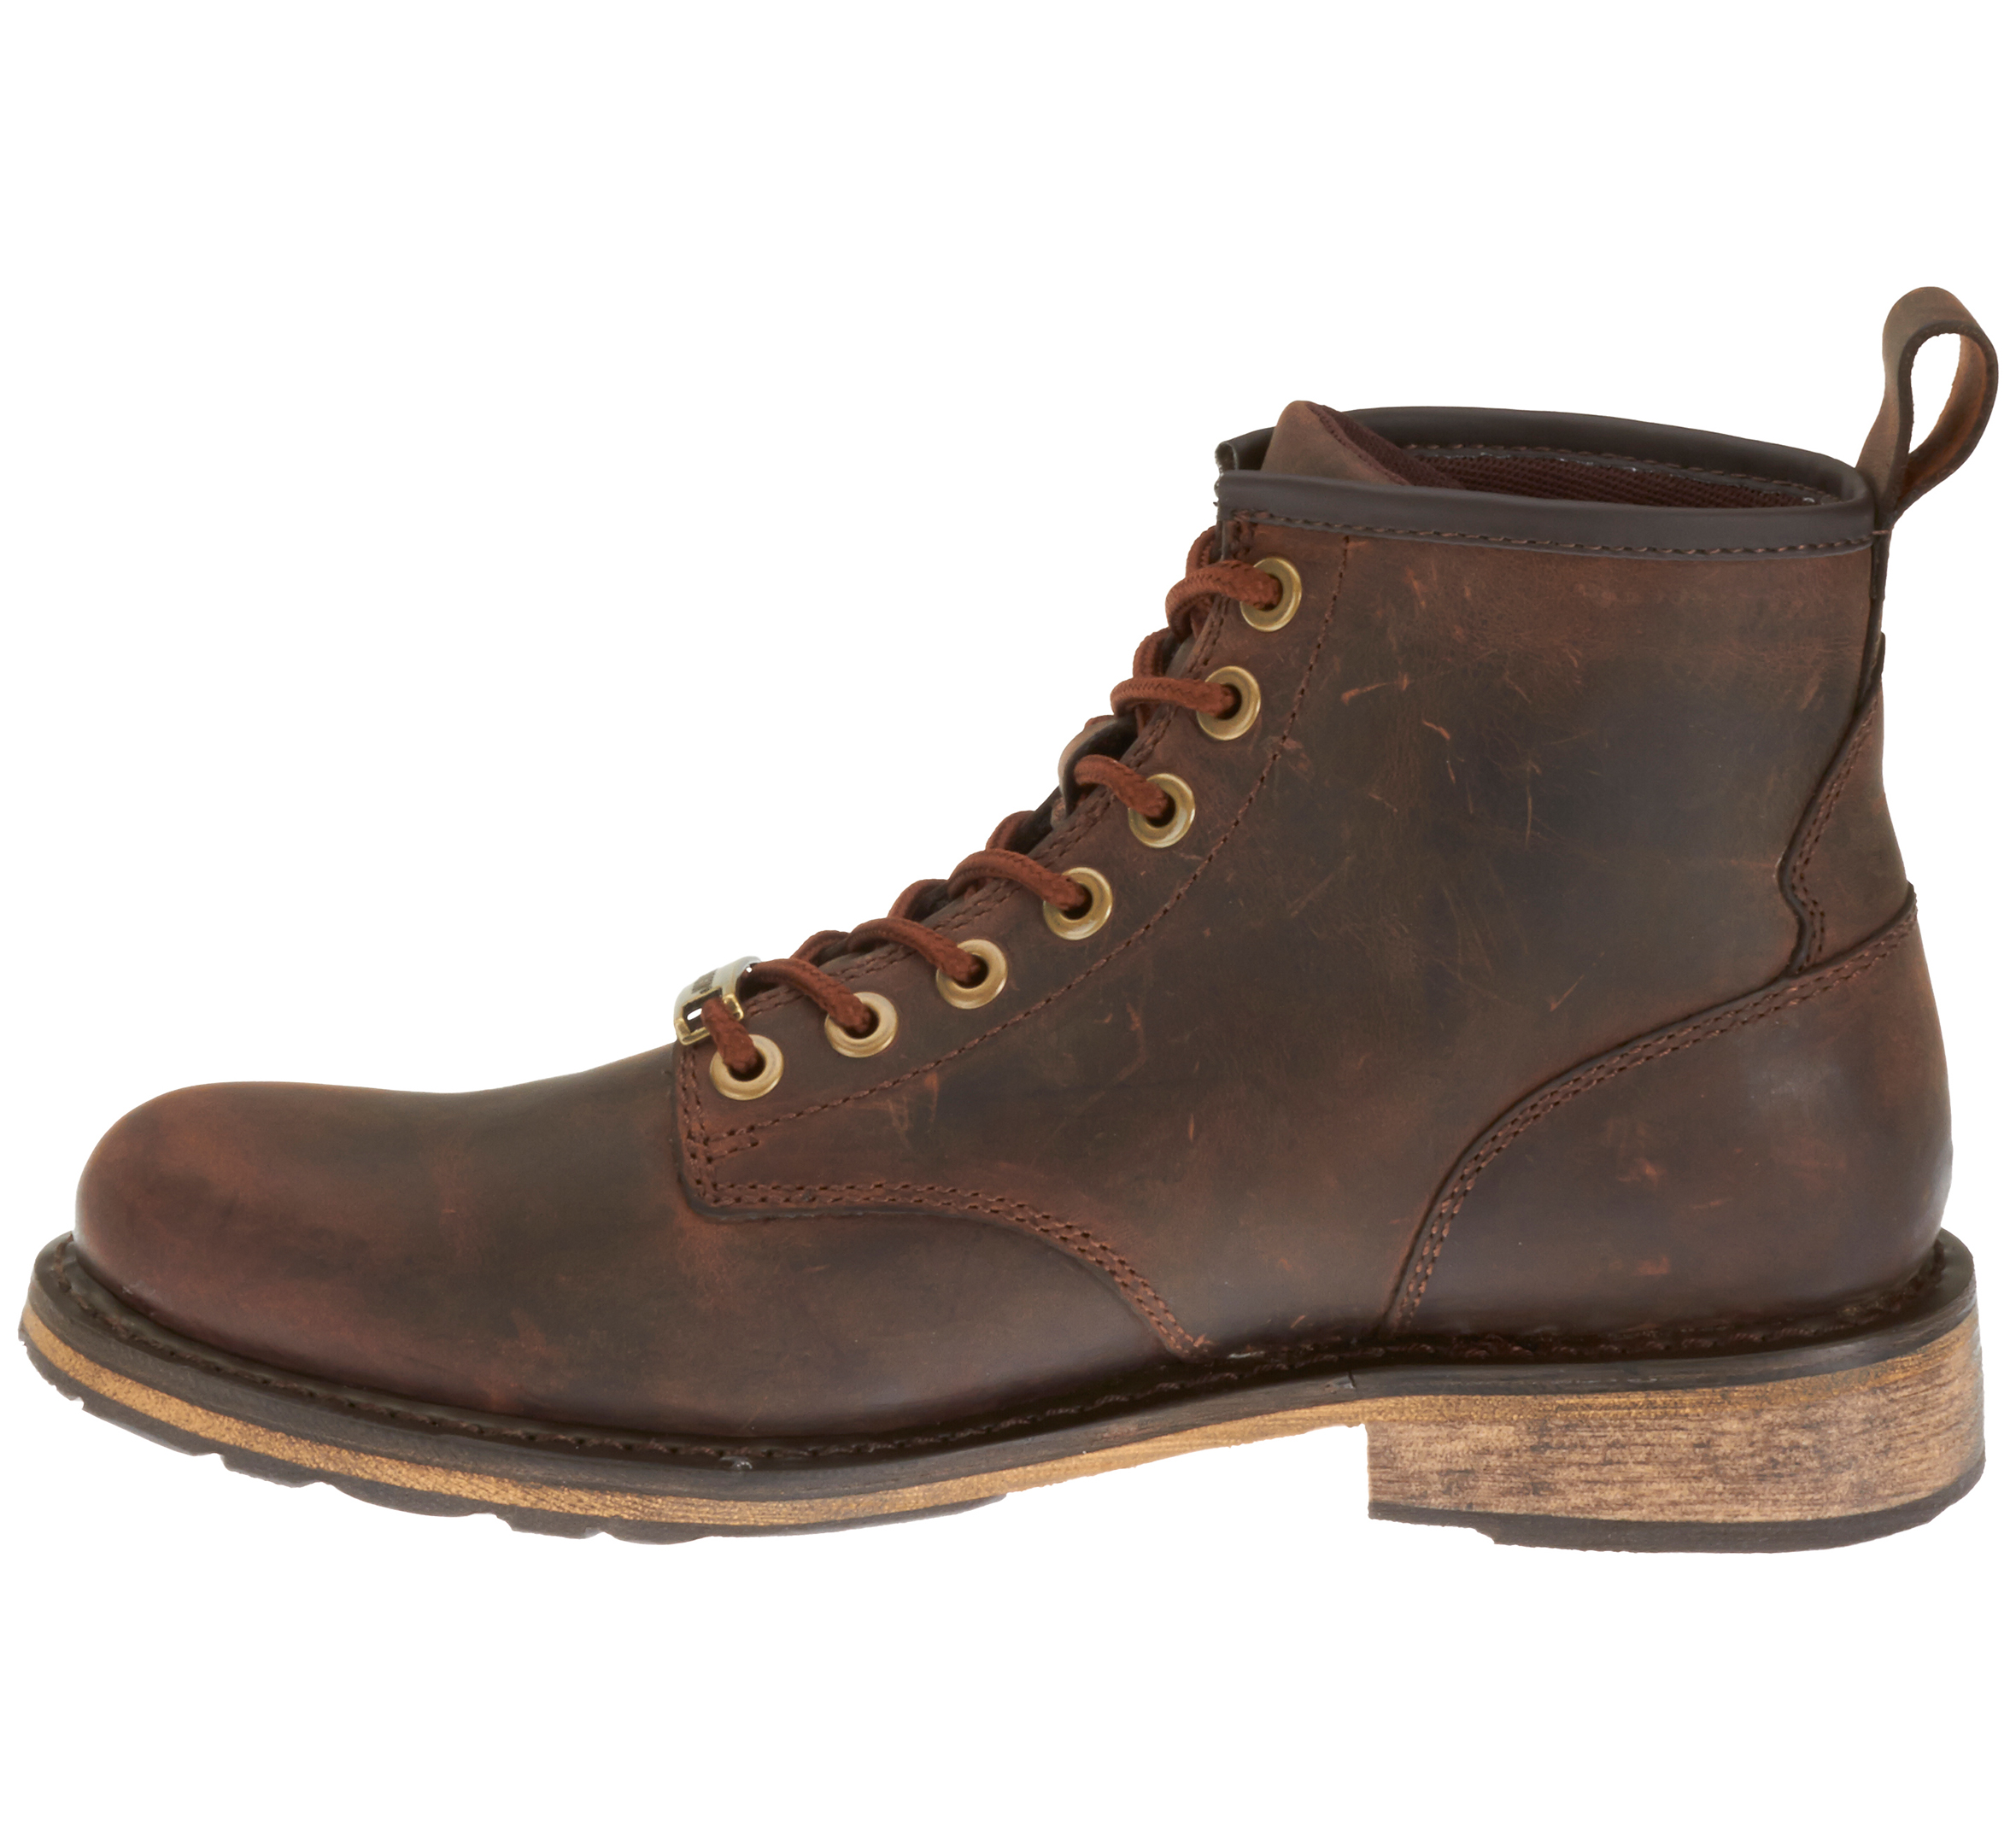 Men's Darrol Boots - Brown - 98733-15VM 